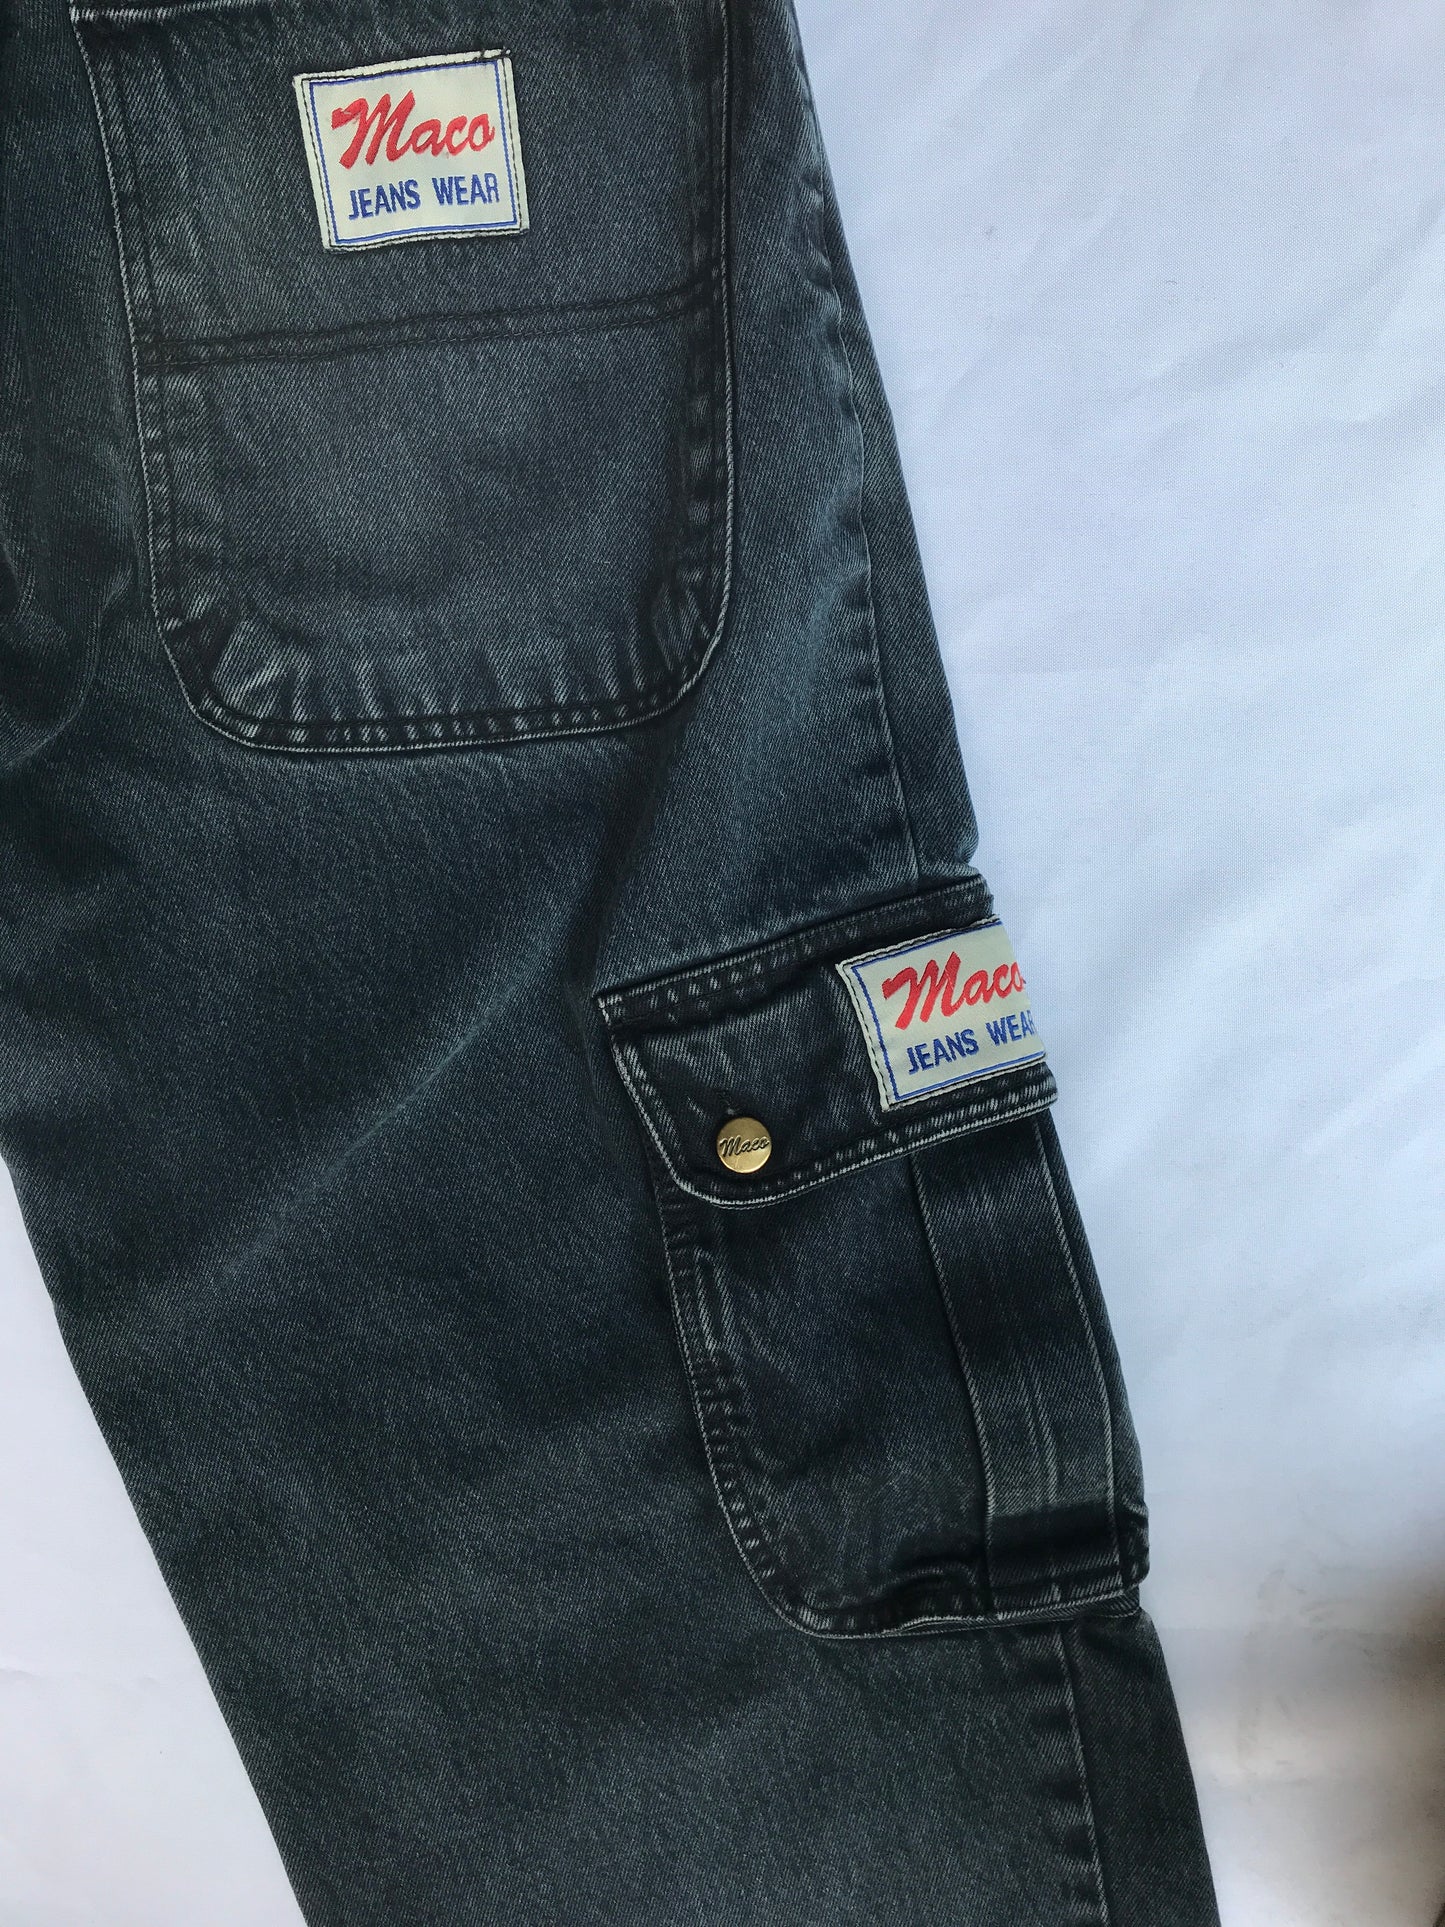 Vintage Maco Jeans